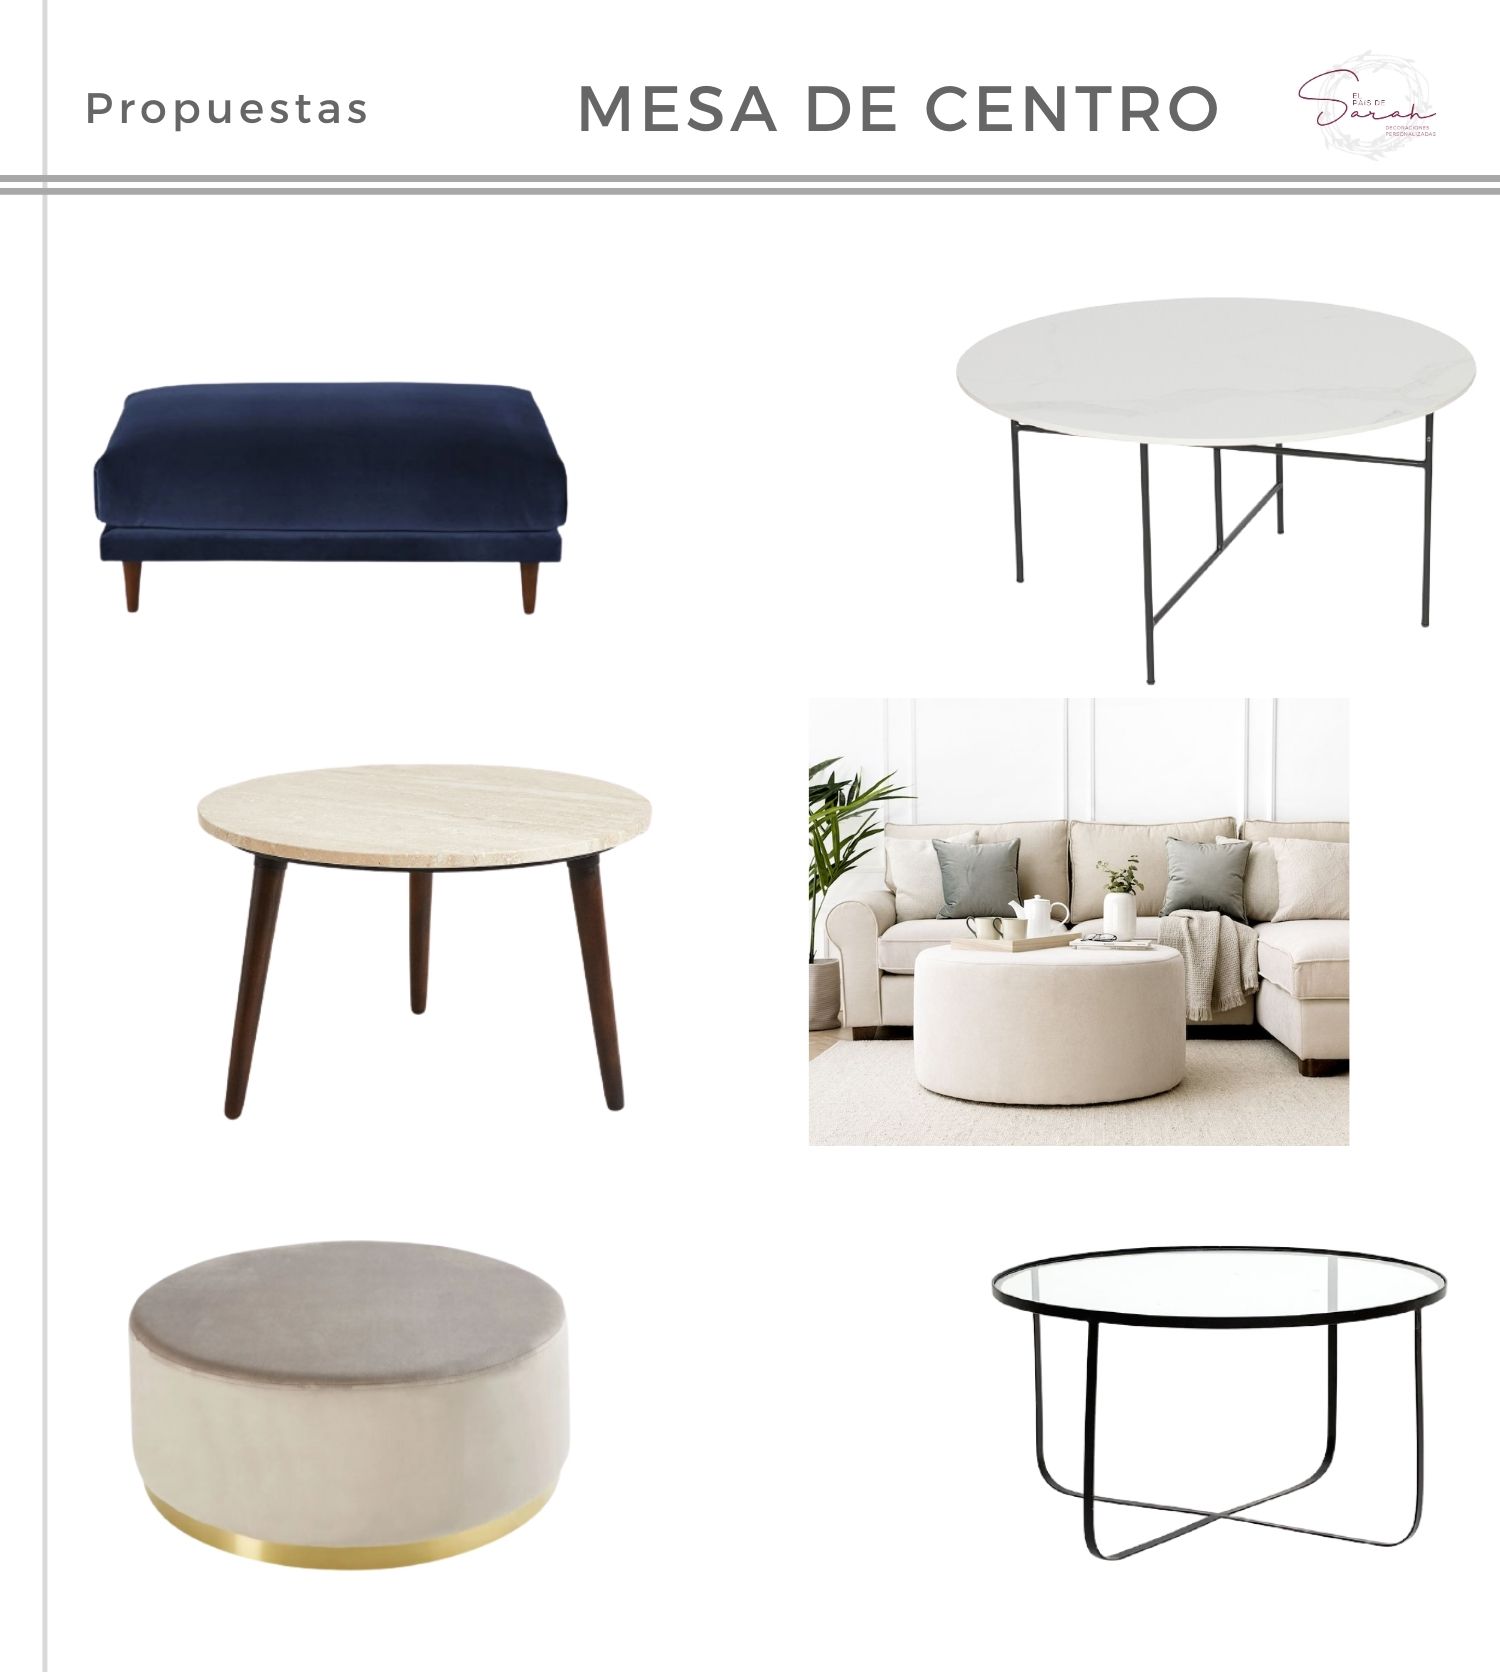 Mini_guía_para_ elegir_mesa_de_centro_perfecta_propuestas_shopping-08